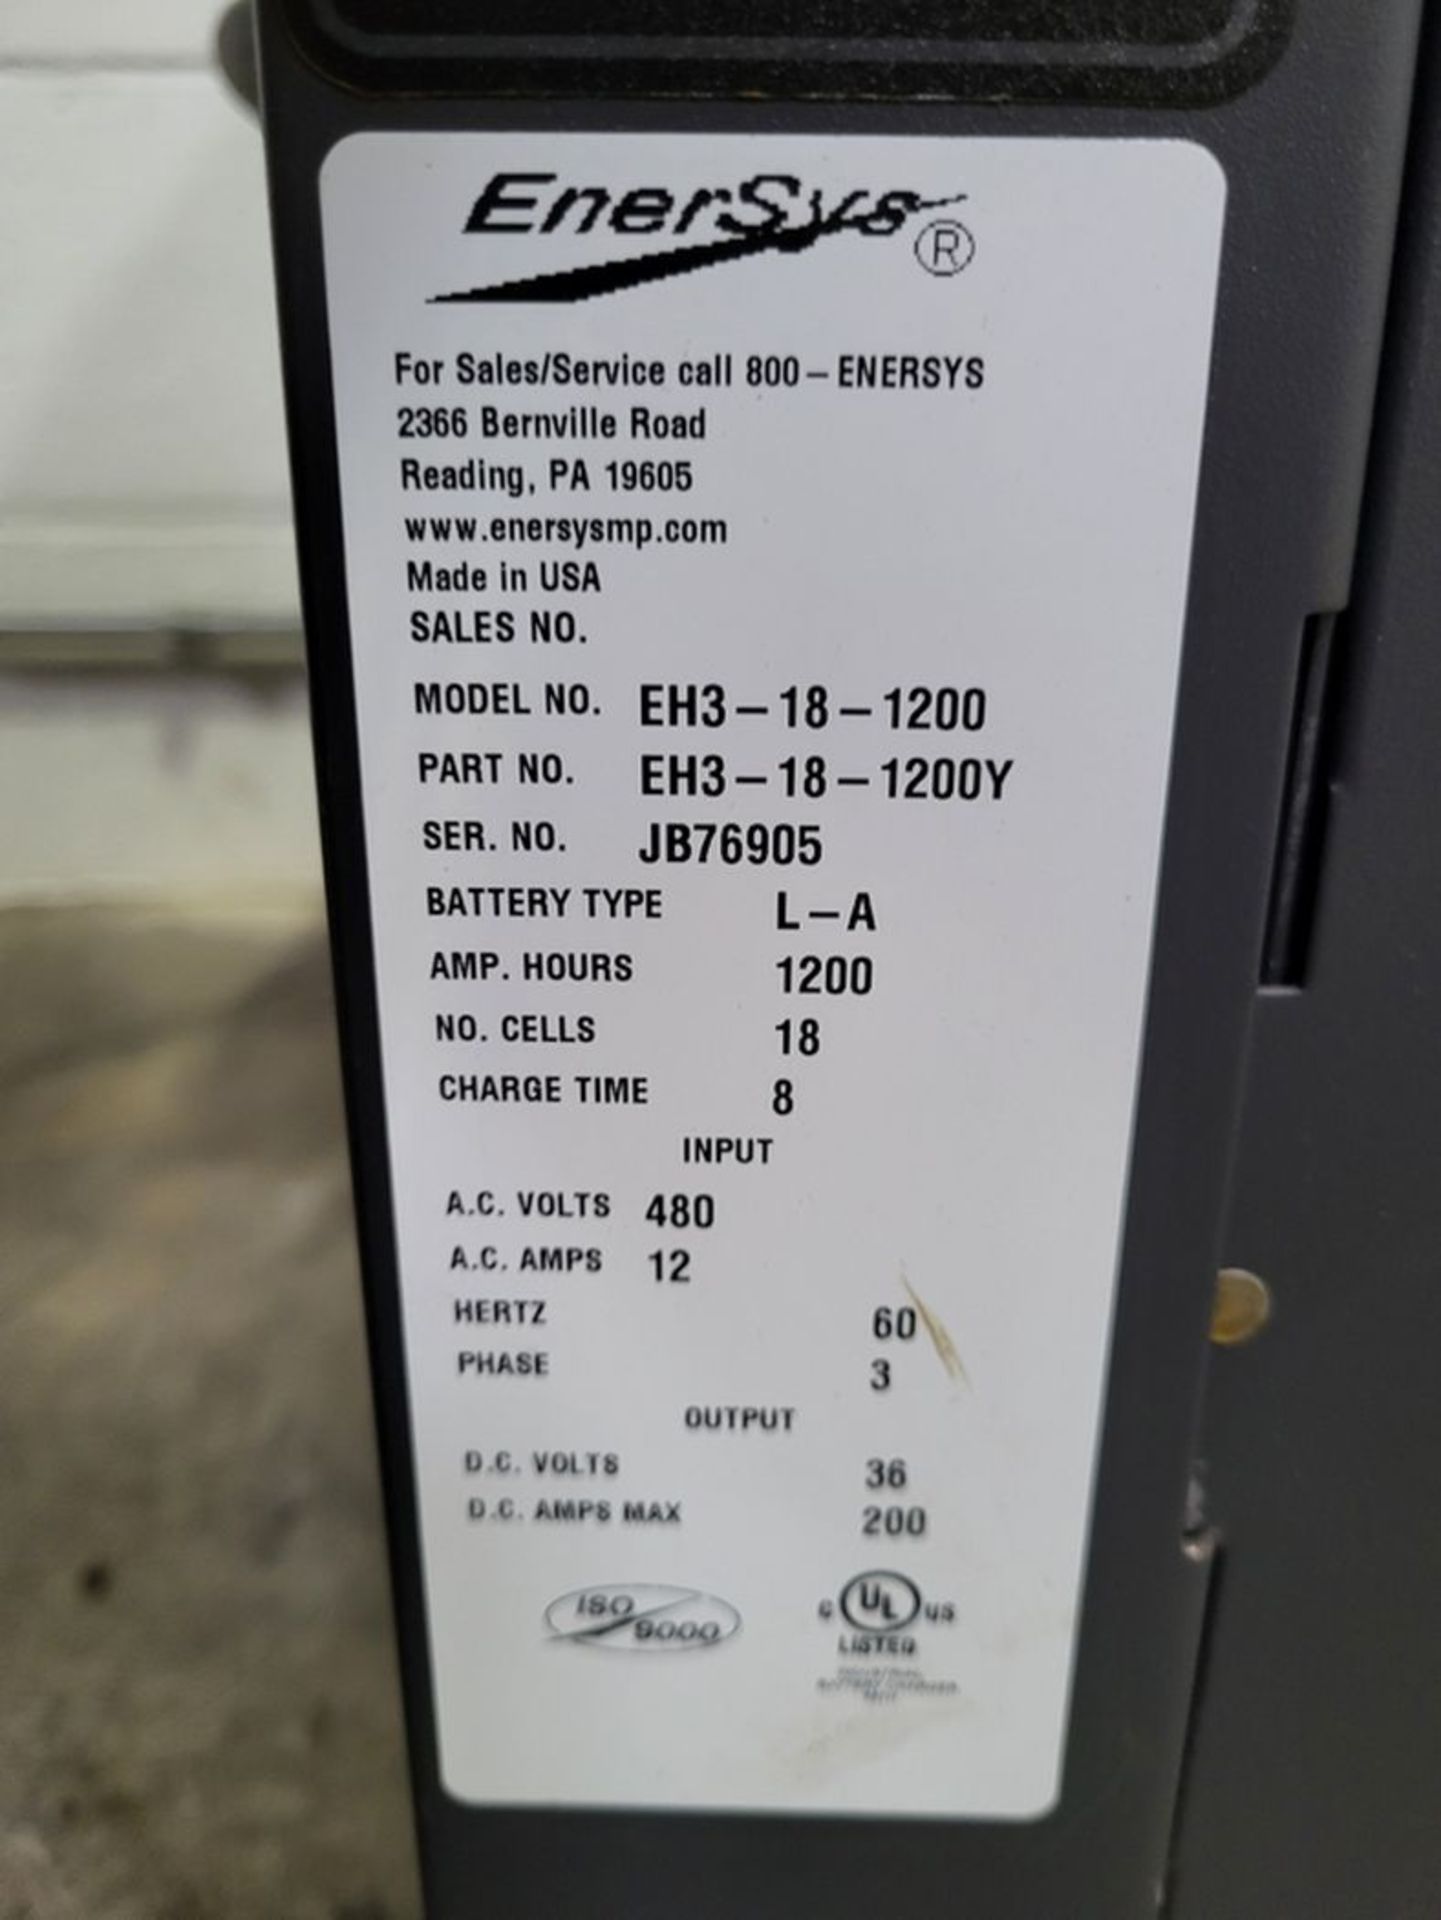 EnerSys Model Eh3-18-1200 EnForcer HF 36-Volt Industrial Battery Charger, S/N: JB76905; 480/3/60 ( - Image 2 of 2